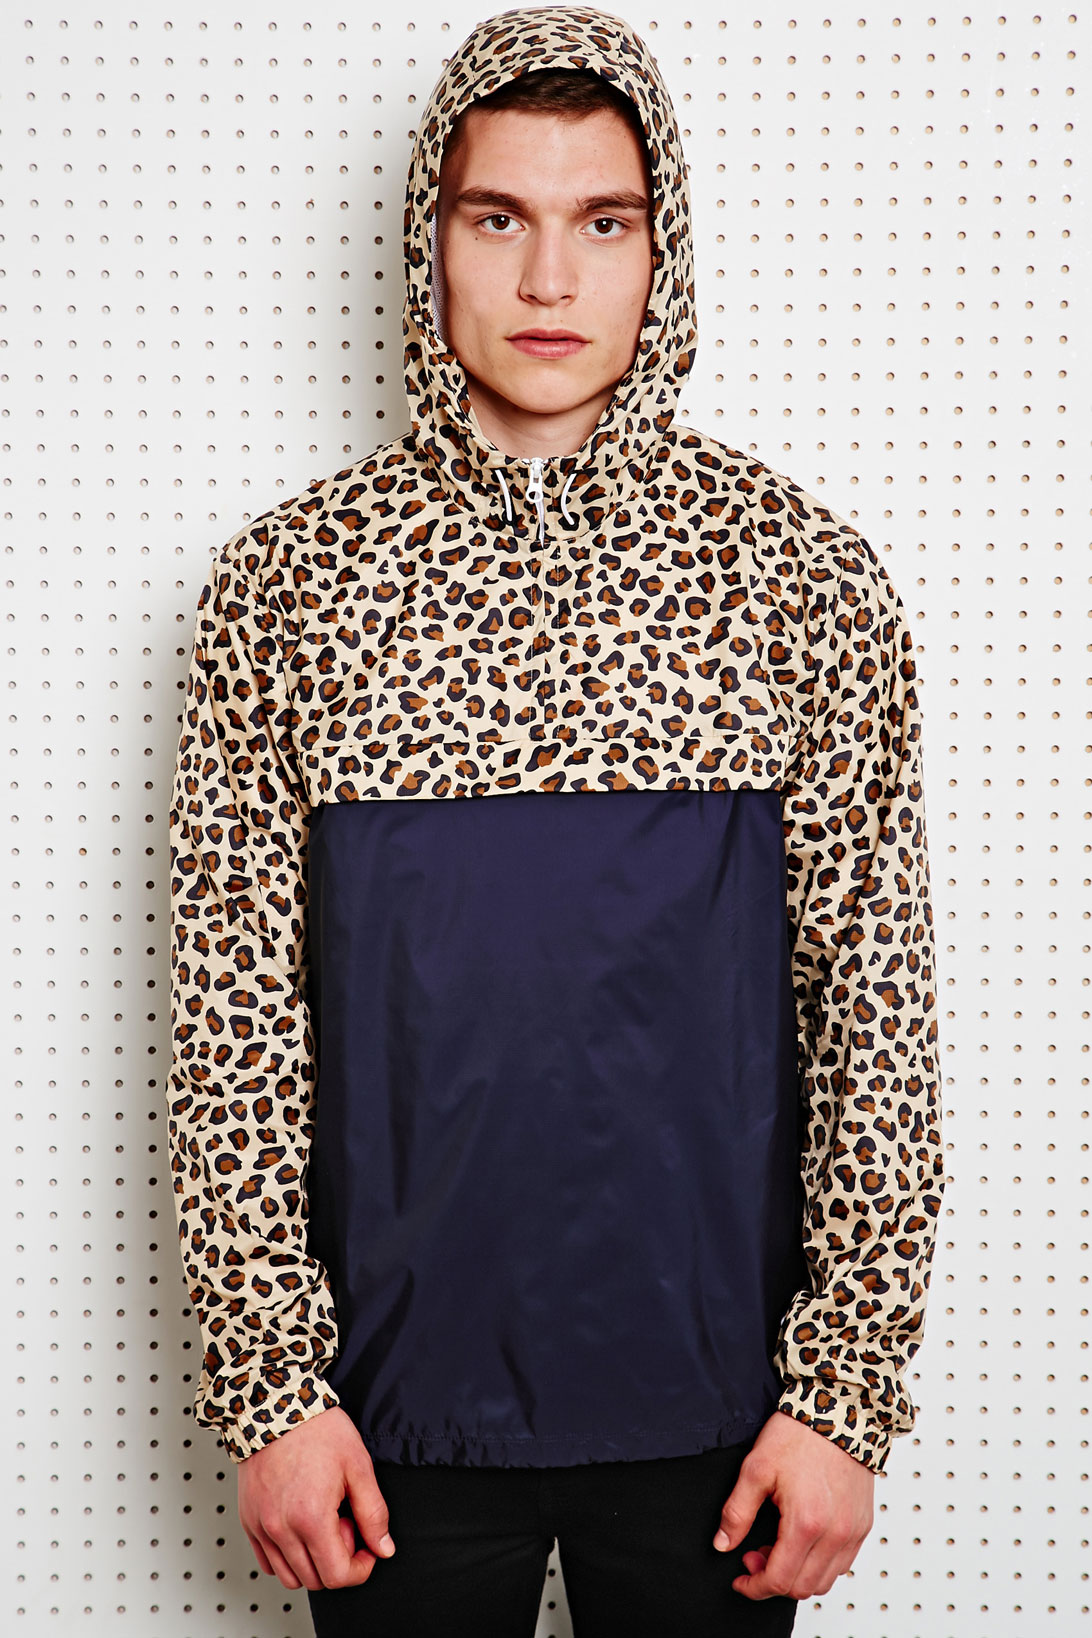 adidas cheetah jacket